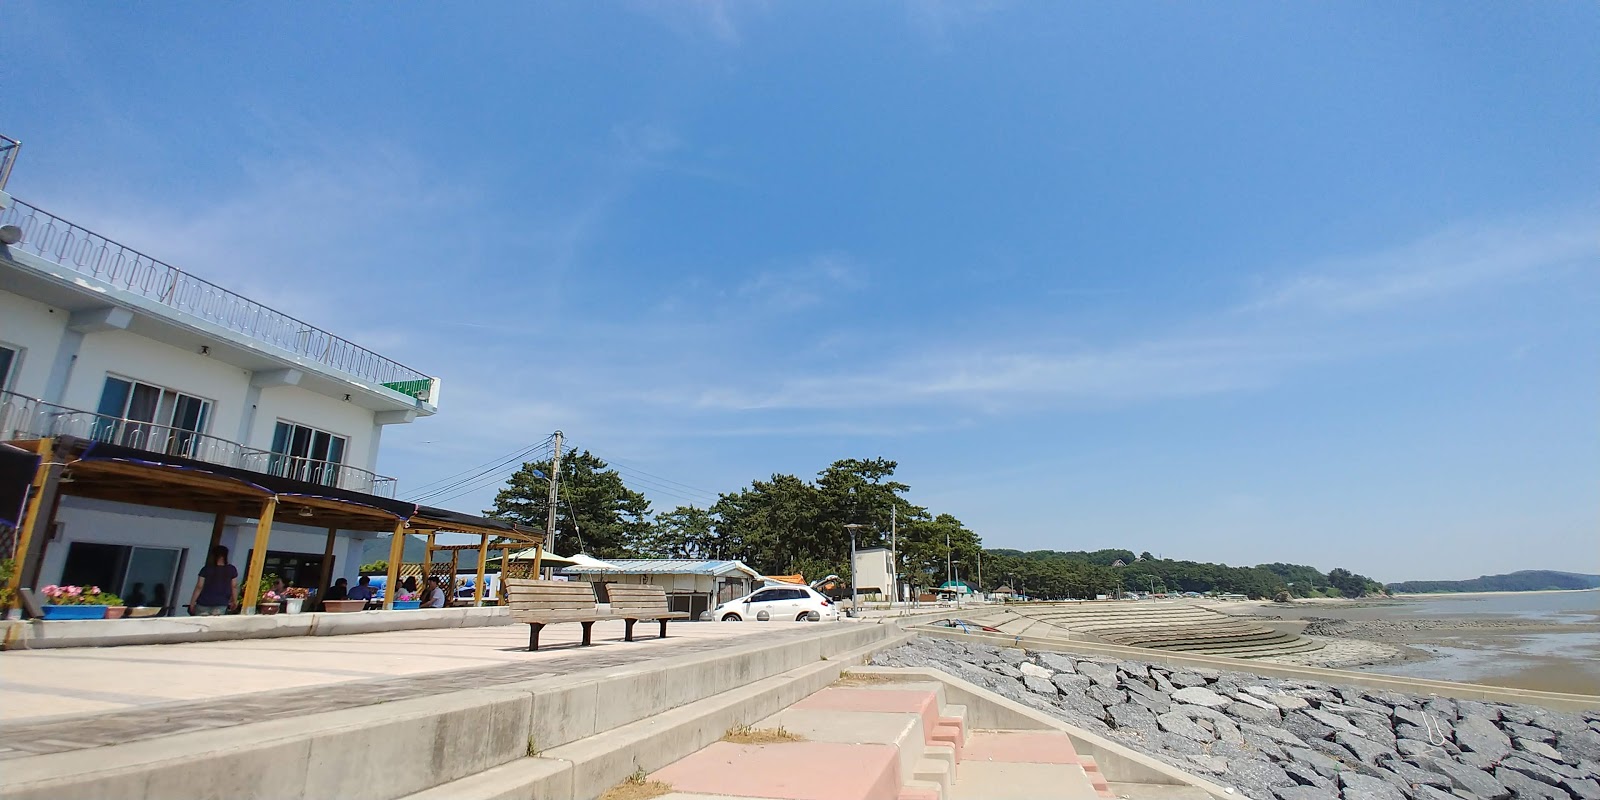 Fotografie cu Biin Beach - locul popular printre cunoscătorii de relaxare